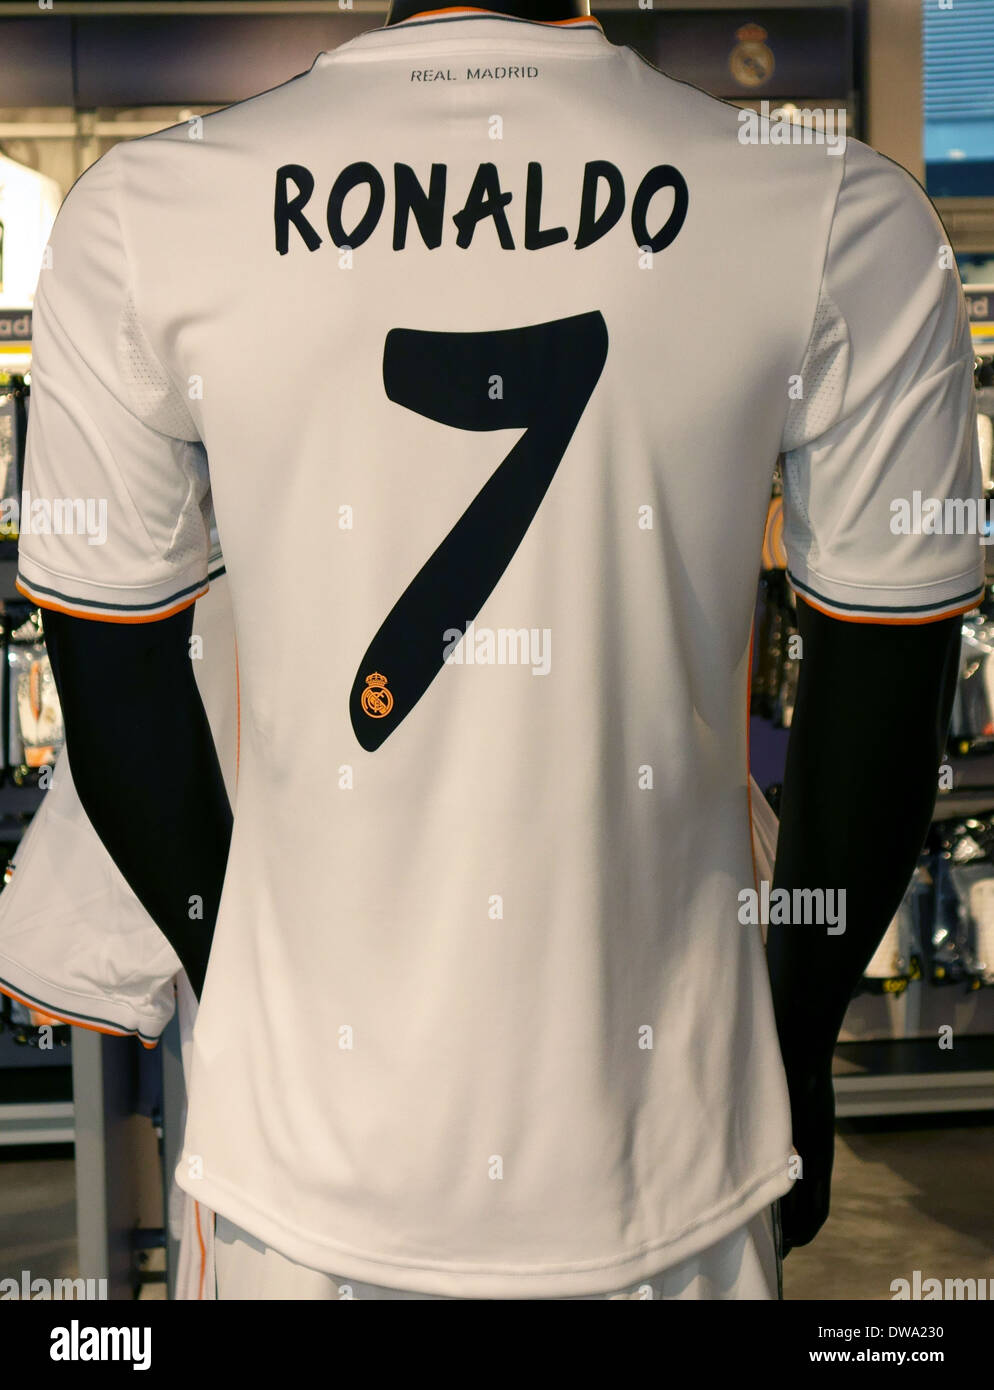 Camiseta de Ronaldo en el Real Madrid Tienda oficial en el Estadio  Bernabeu, España Fotografía de stock - Alamy